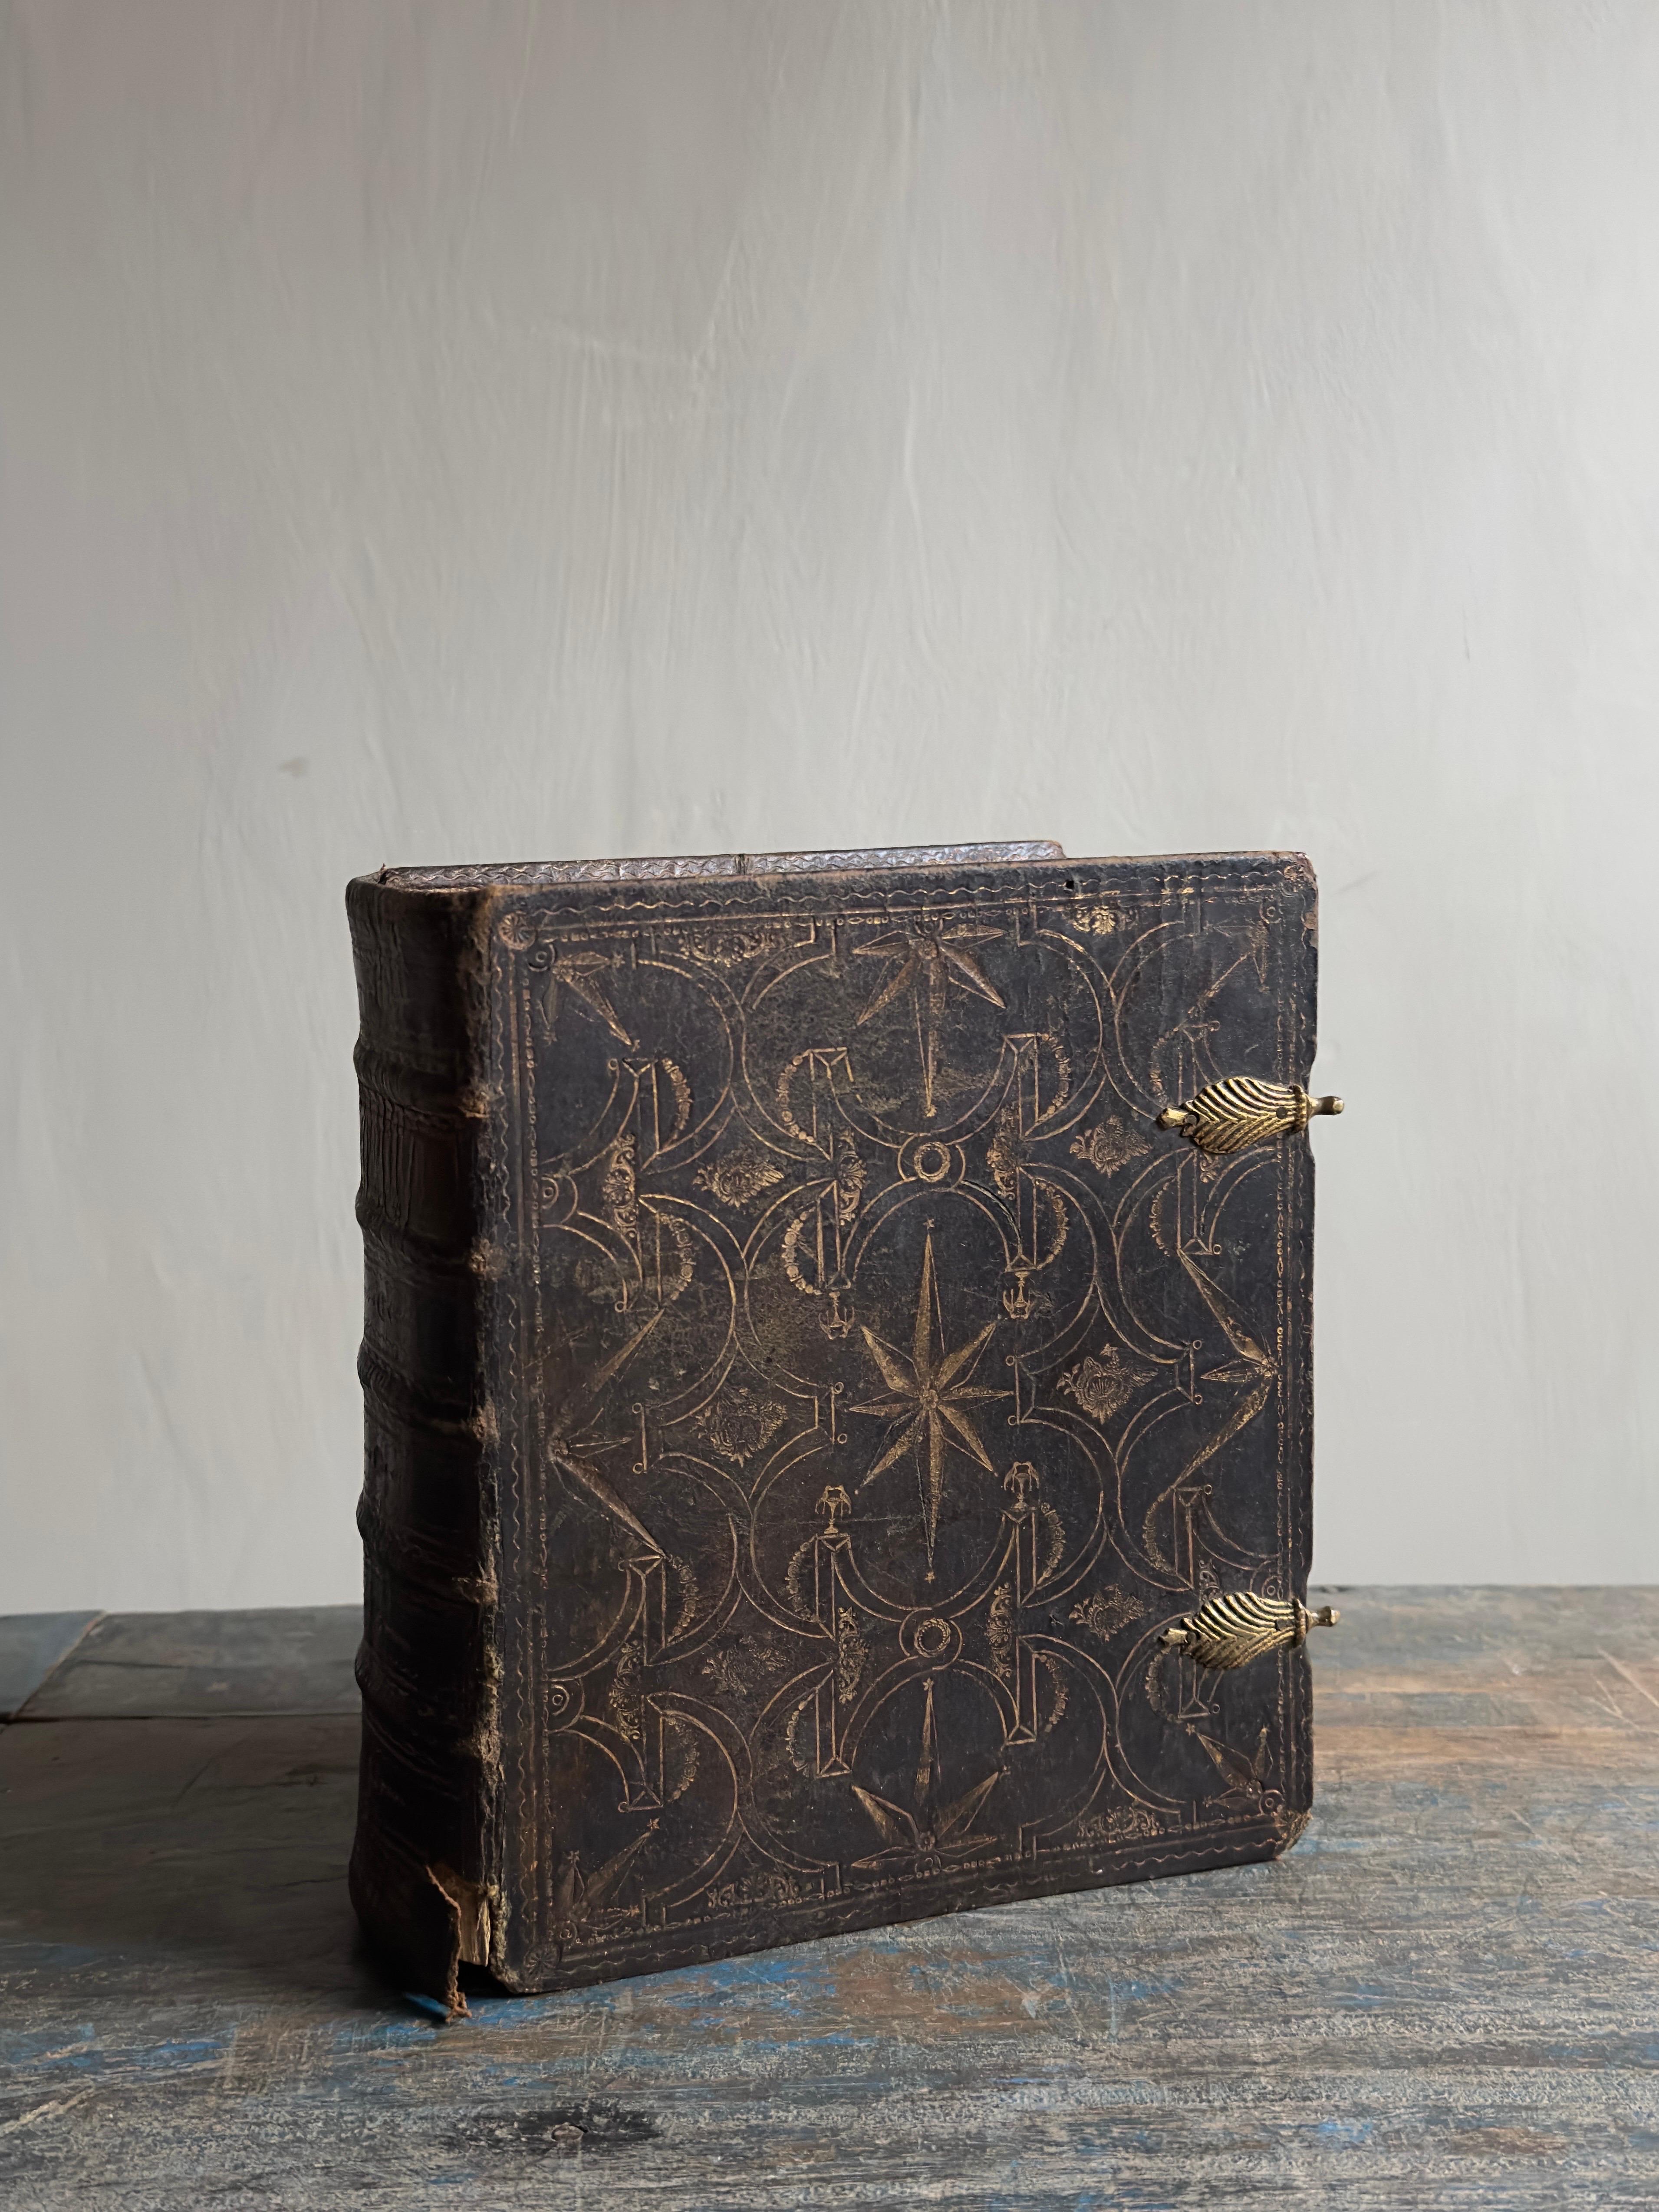 Une belle bible ancienne de Scandinavie de l'année 1810. La couverture est probablement encore plus ancienne, peut-être de la fin des années 1700. 

Il s'agit d'un élément de décoration Wabi Sabi parfait pour donner une certaine ambiance à une